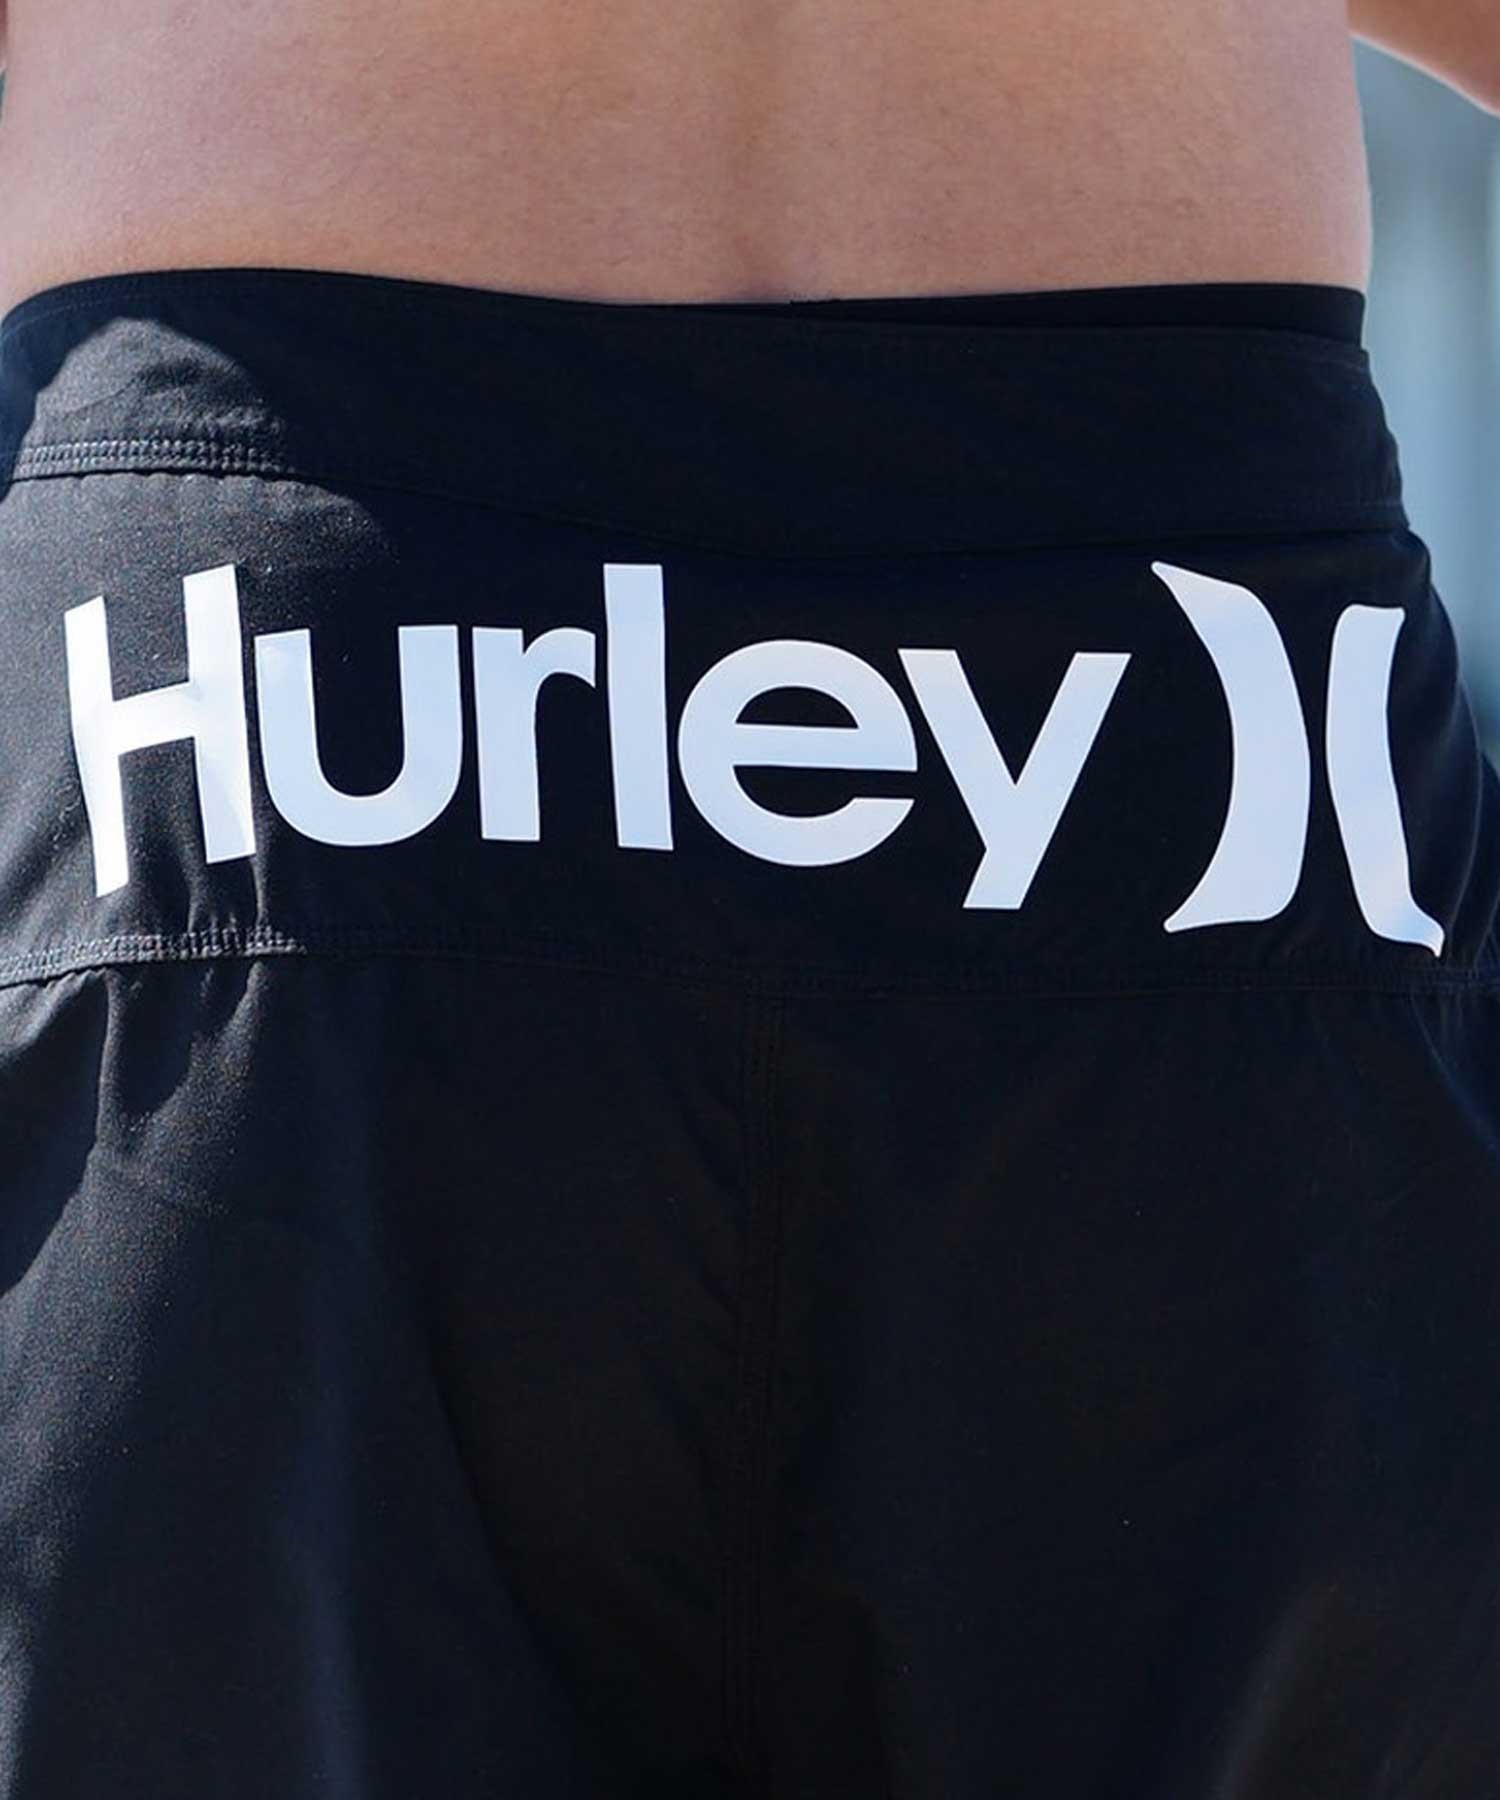 Hurley ハーレー メンズ ボードショーツ サーフトランクス 19インチ USモデル 速乾 水着 MBS0012190(H323-28.0inch)